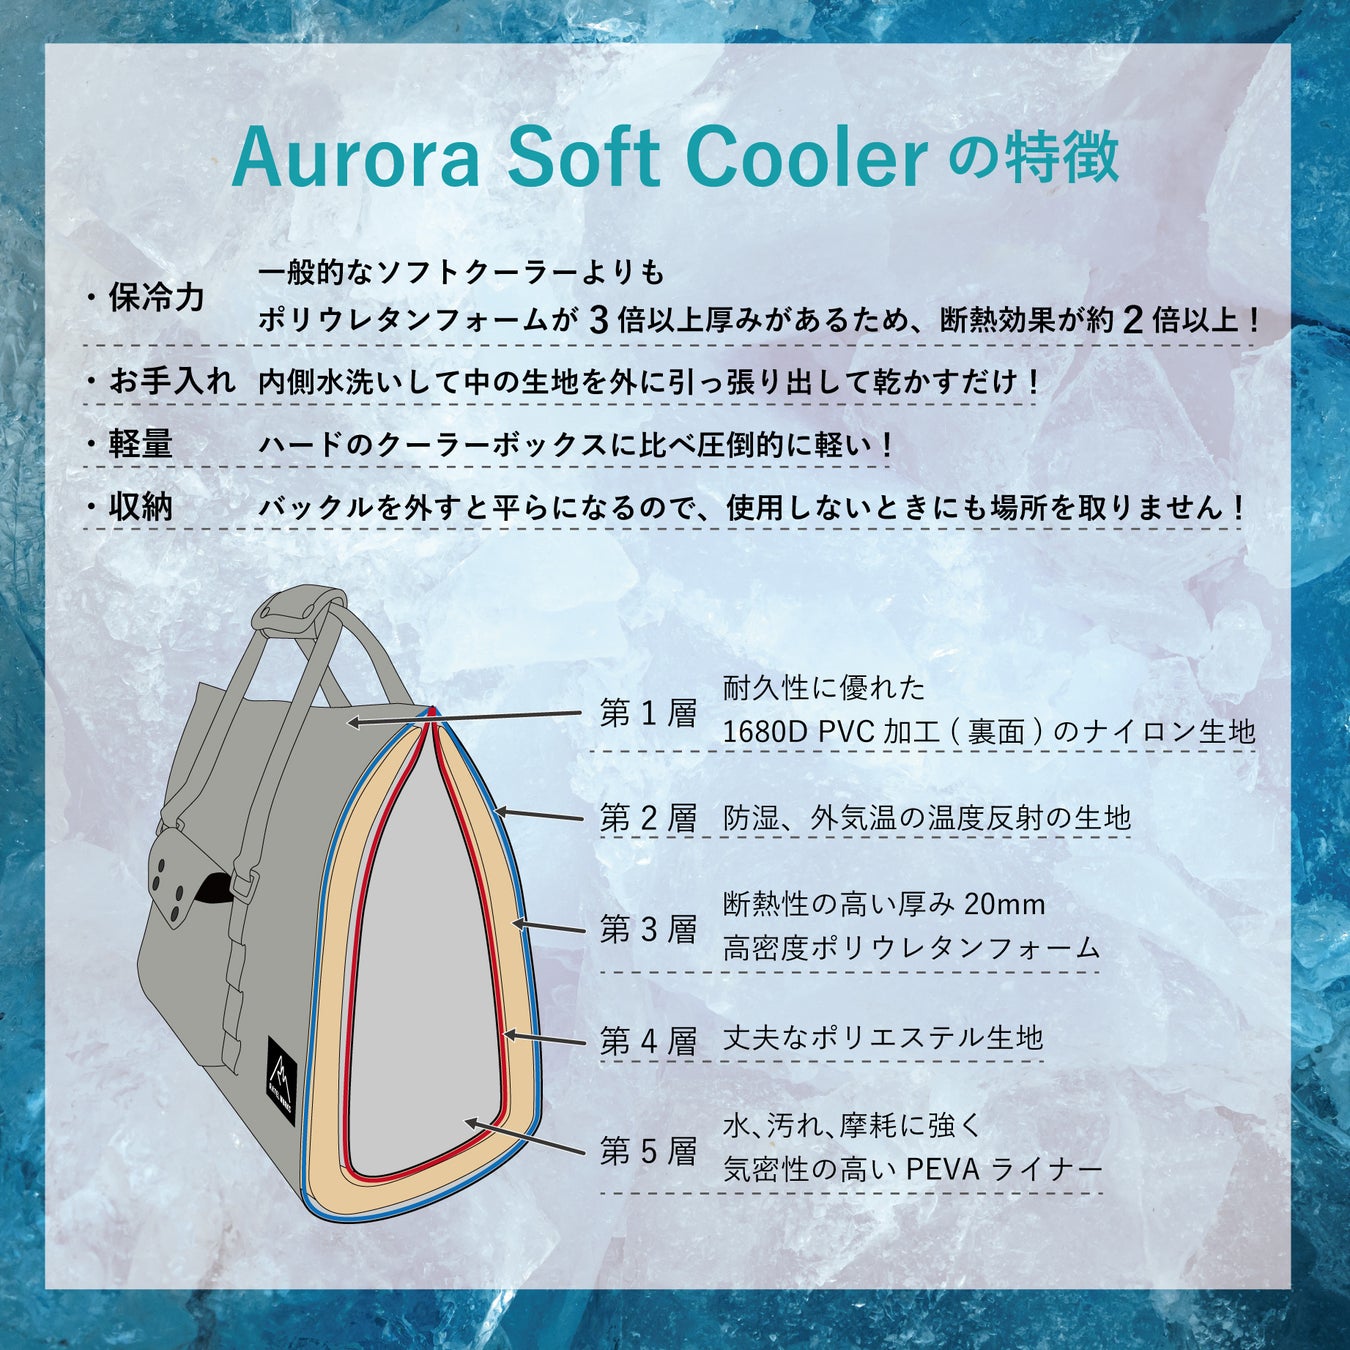 最強ソフトクーラーへの挑戦。AURORA SOFT COOLERを7月中旬リリース予定のサブ画像2